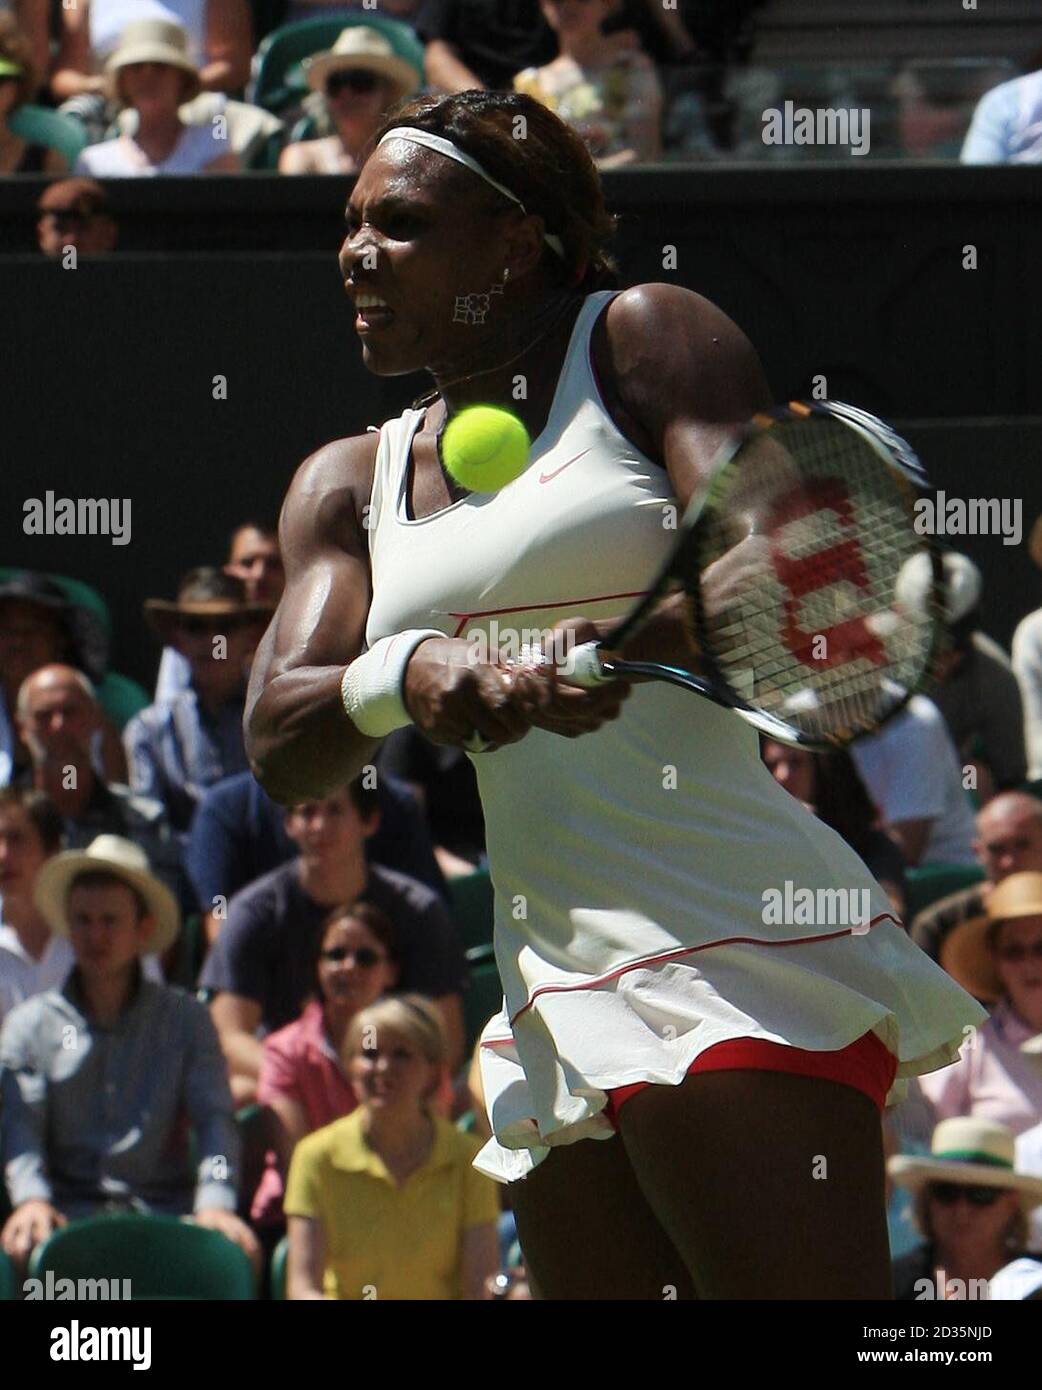 Serena Williams aux États-Unis en action contre Michelle Larcher de Brito au Portugal lors du deuxième jour des Championnats de Wimbledon 2010 au All England Lawn tennis Club, Wimbledon. Banque D'Images